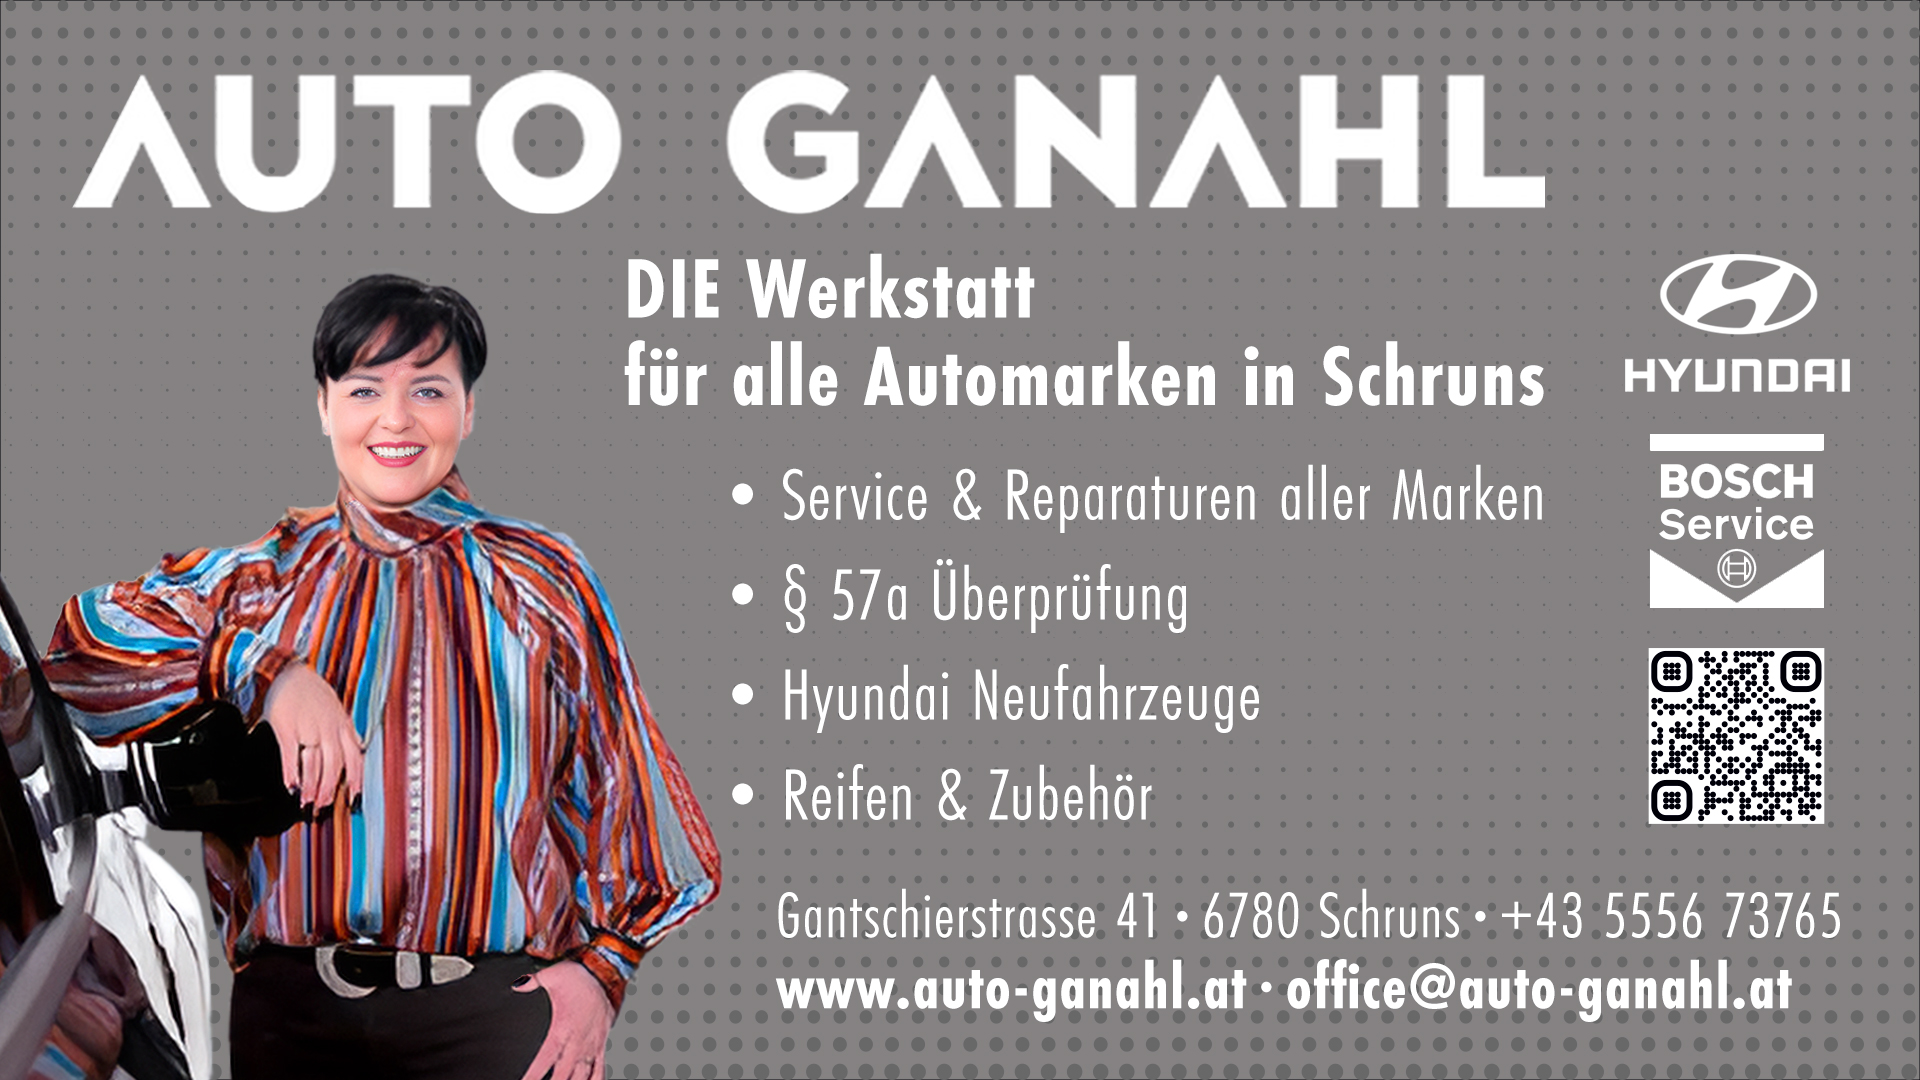 lehre24.at - Auto Ganahl GmbH